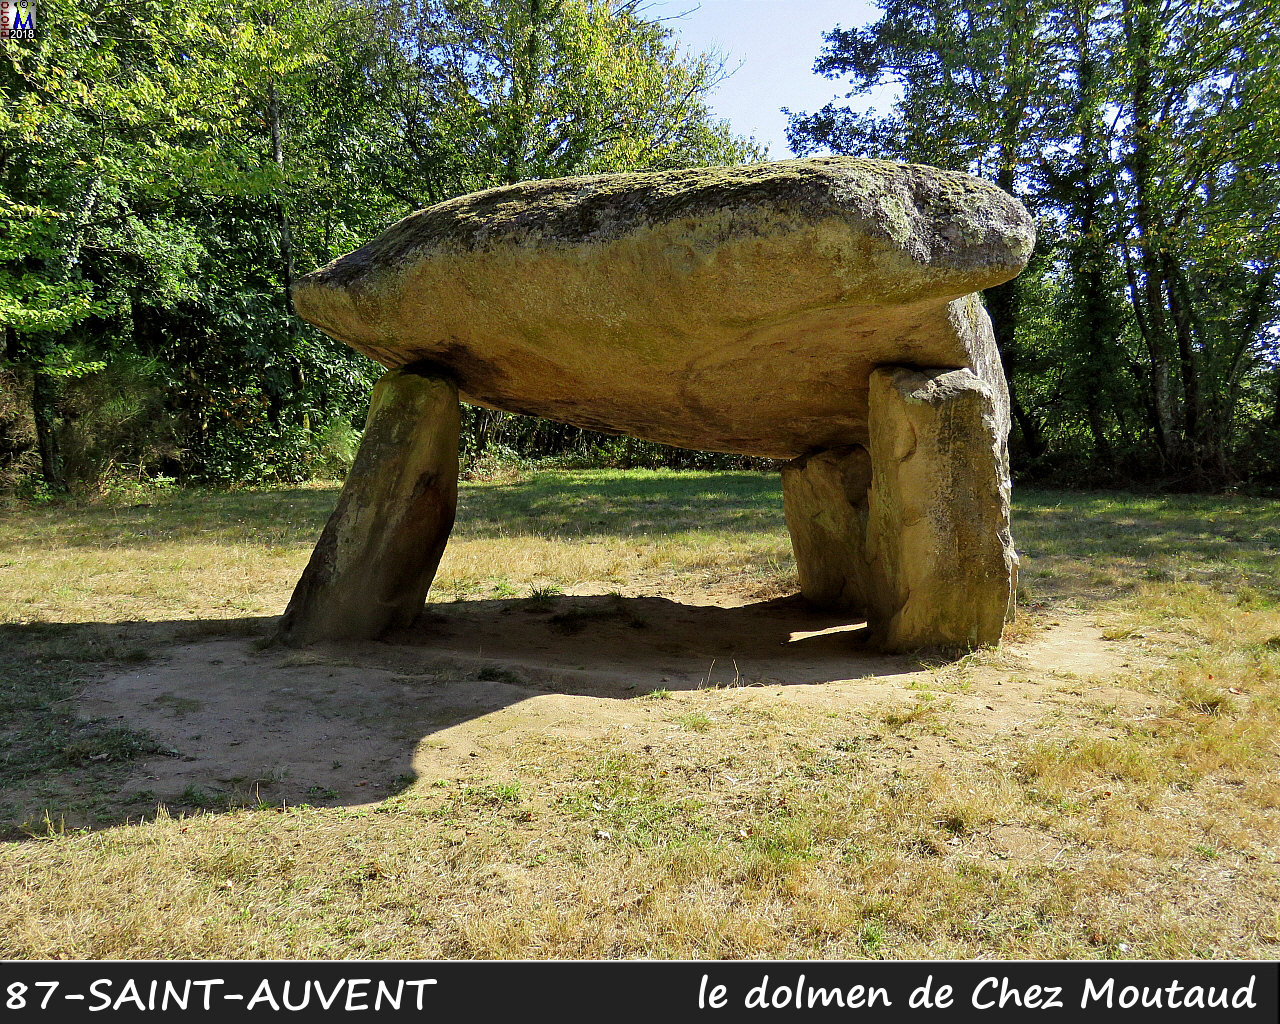 87St-AUVENT_dolmen_1002.jpg